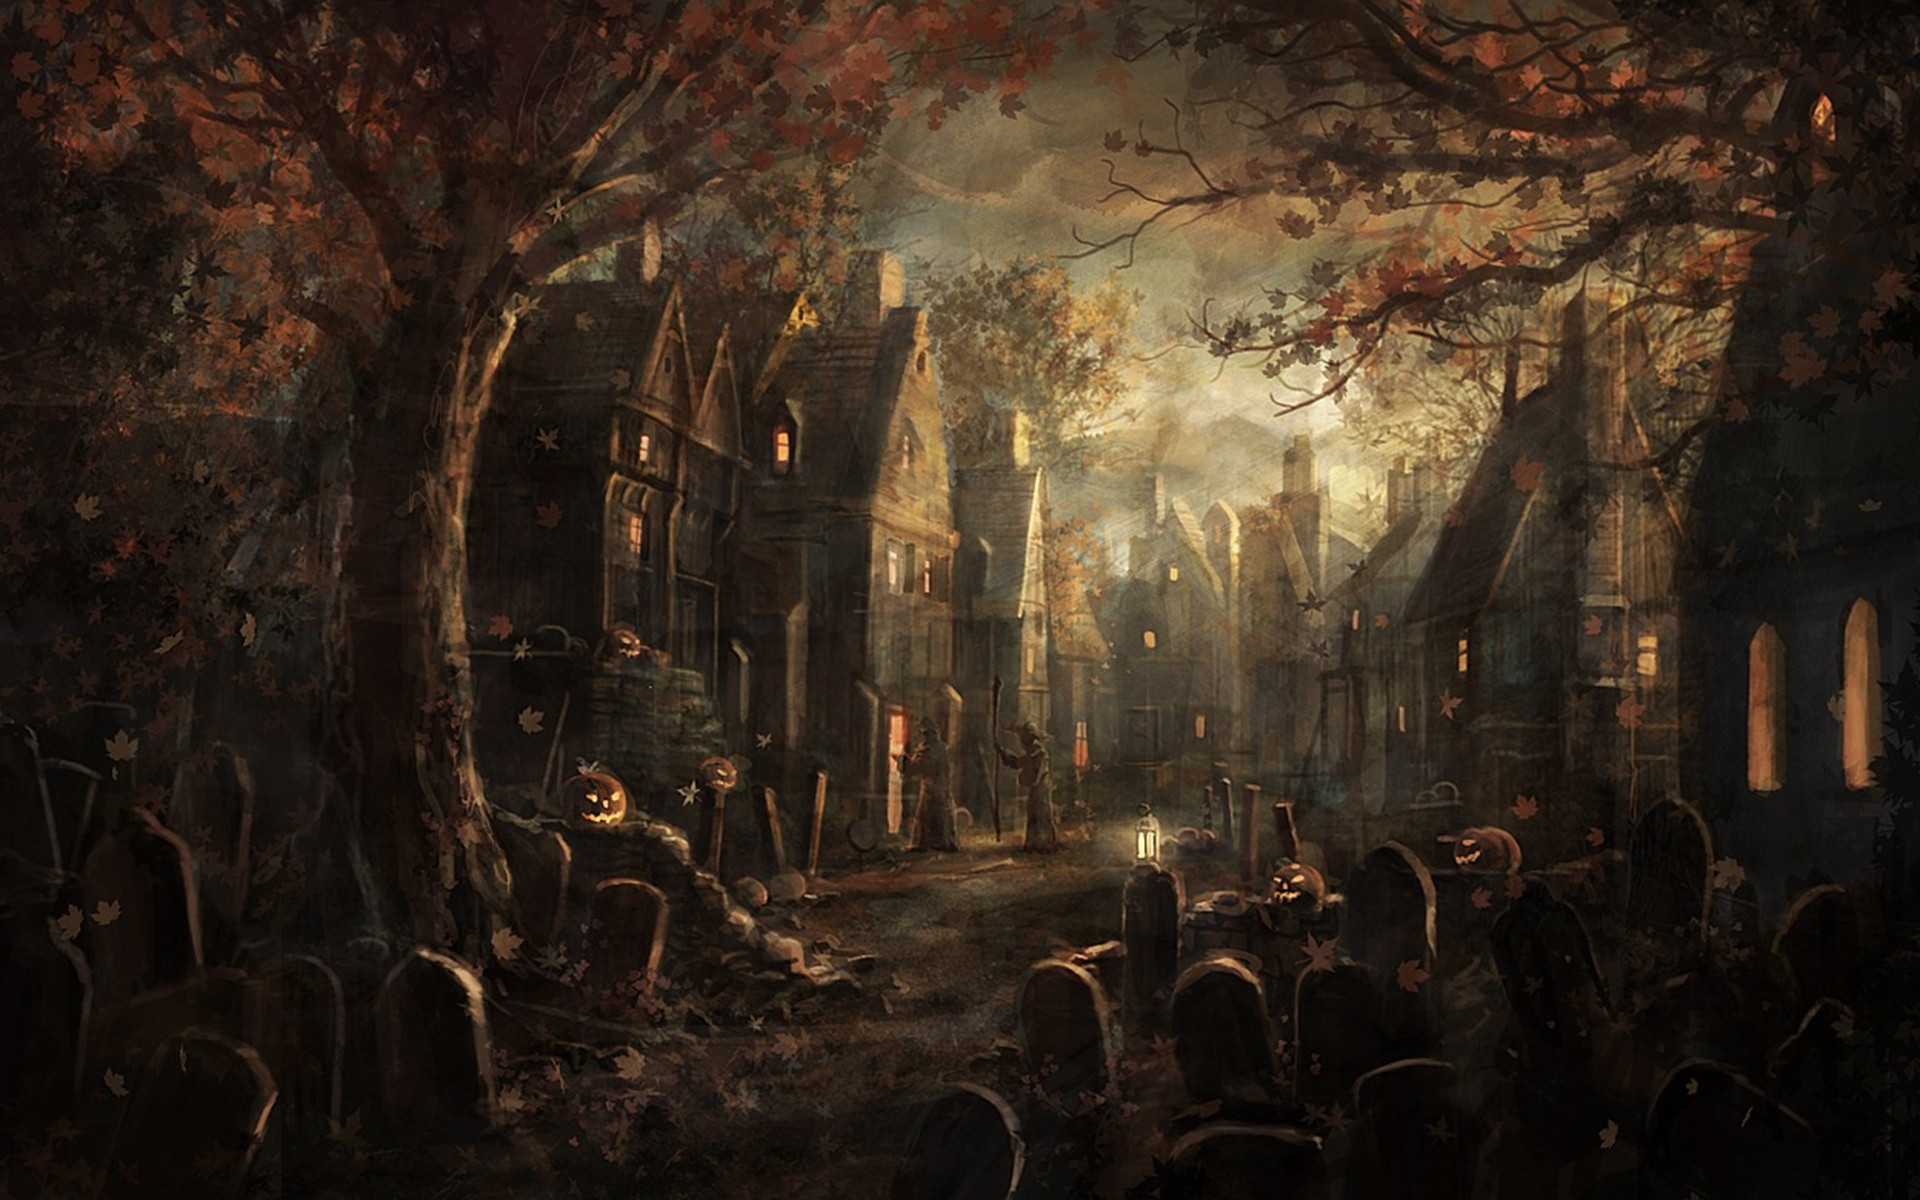 Dark horror gothic raven cemetery graveyard halloween wallpaper  1920x1200   30231  WallpaperUP